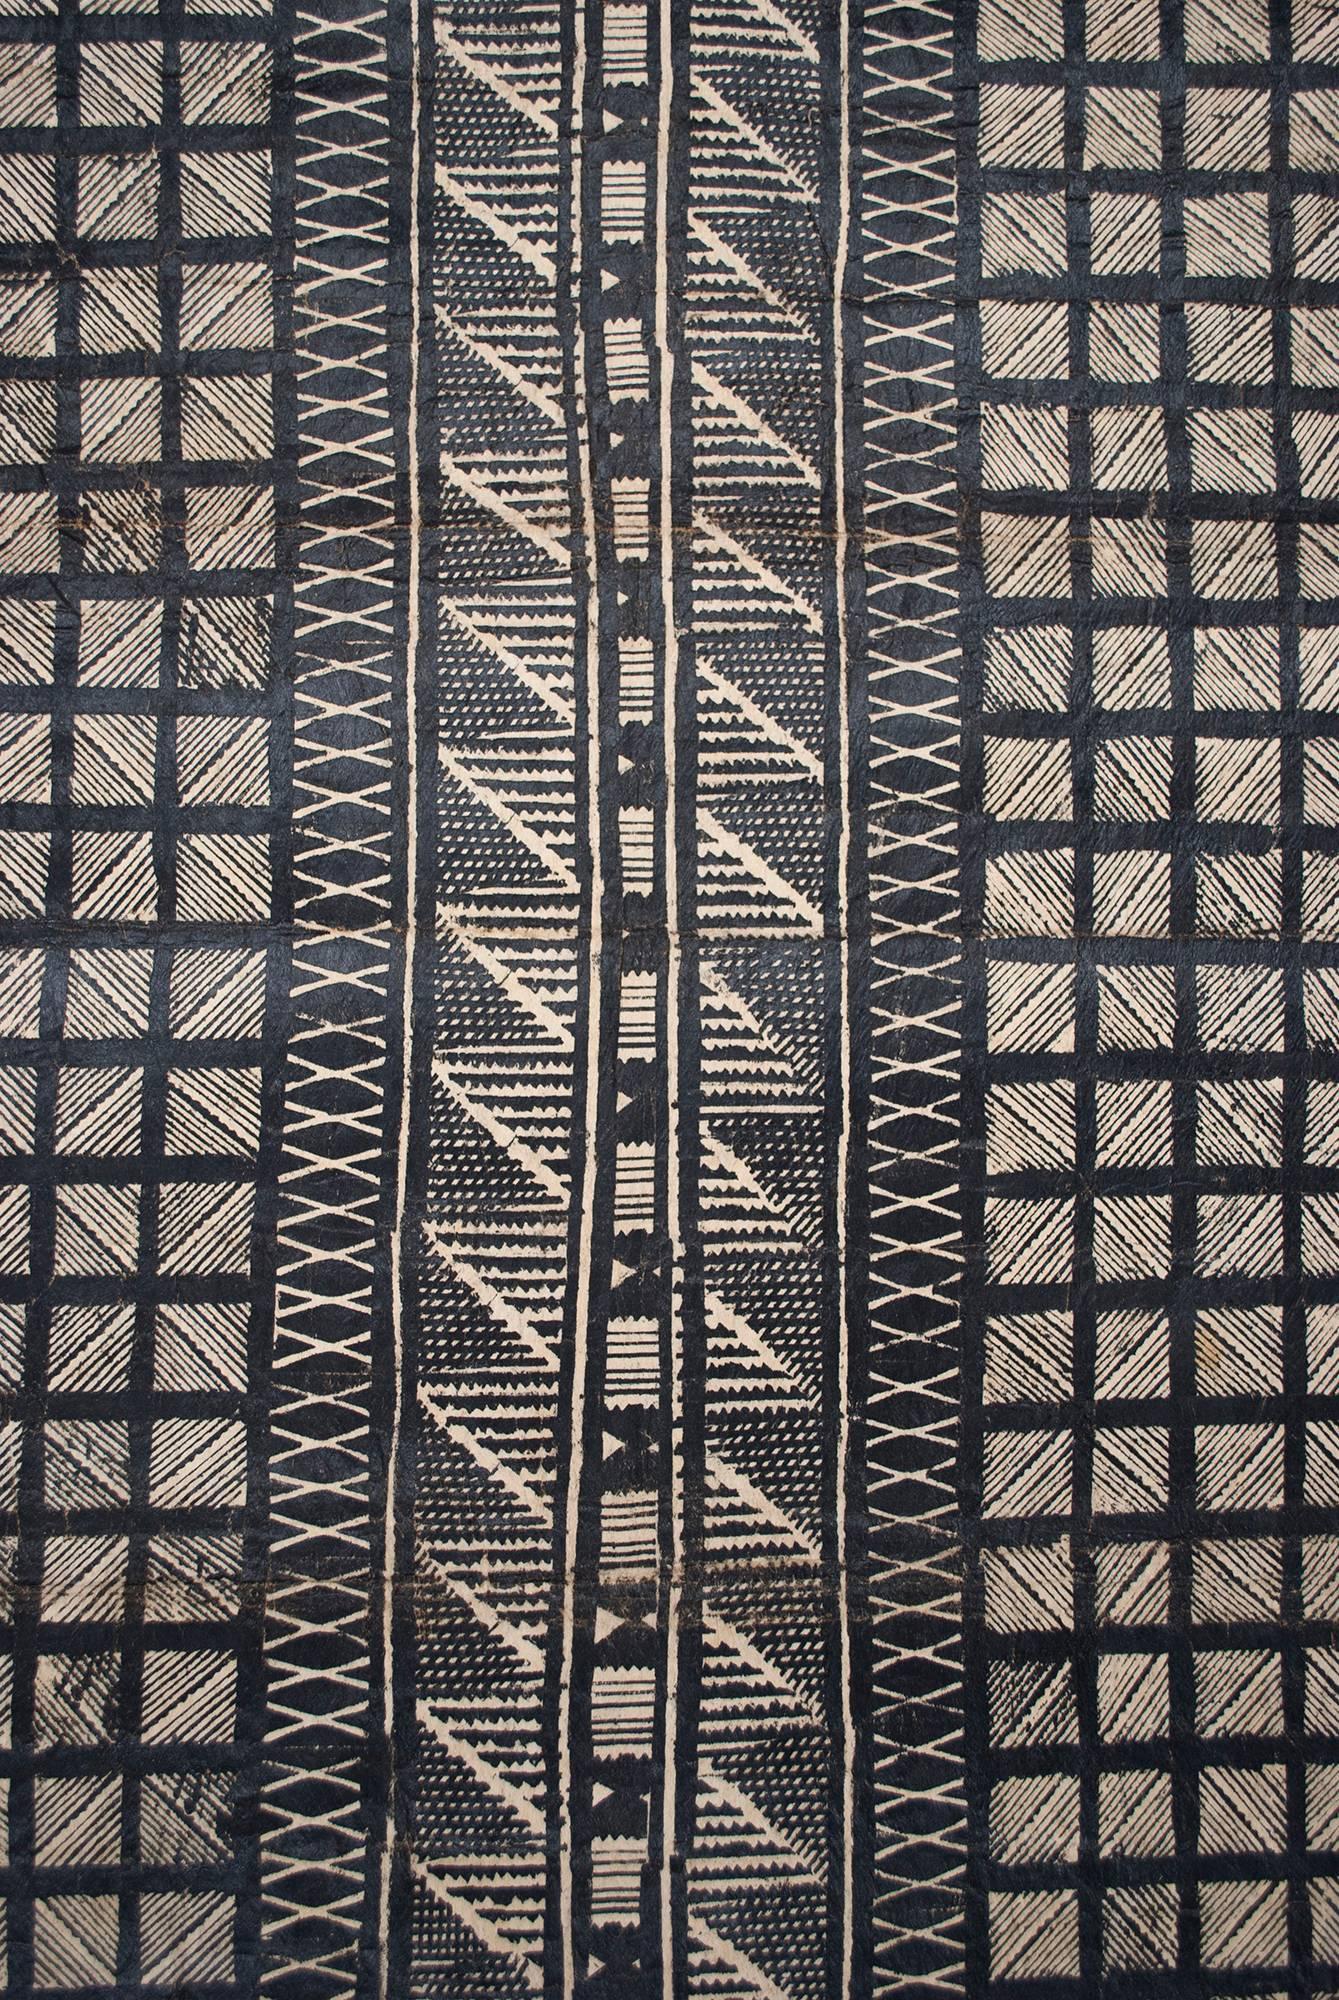 Tissu Tapa en fibre de mûrier avec des pigments naturels, Fidji, milieu du 20e siècle.